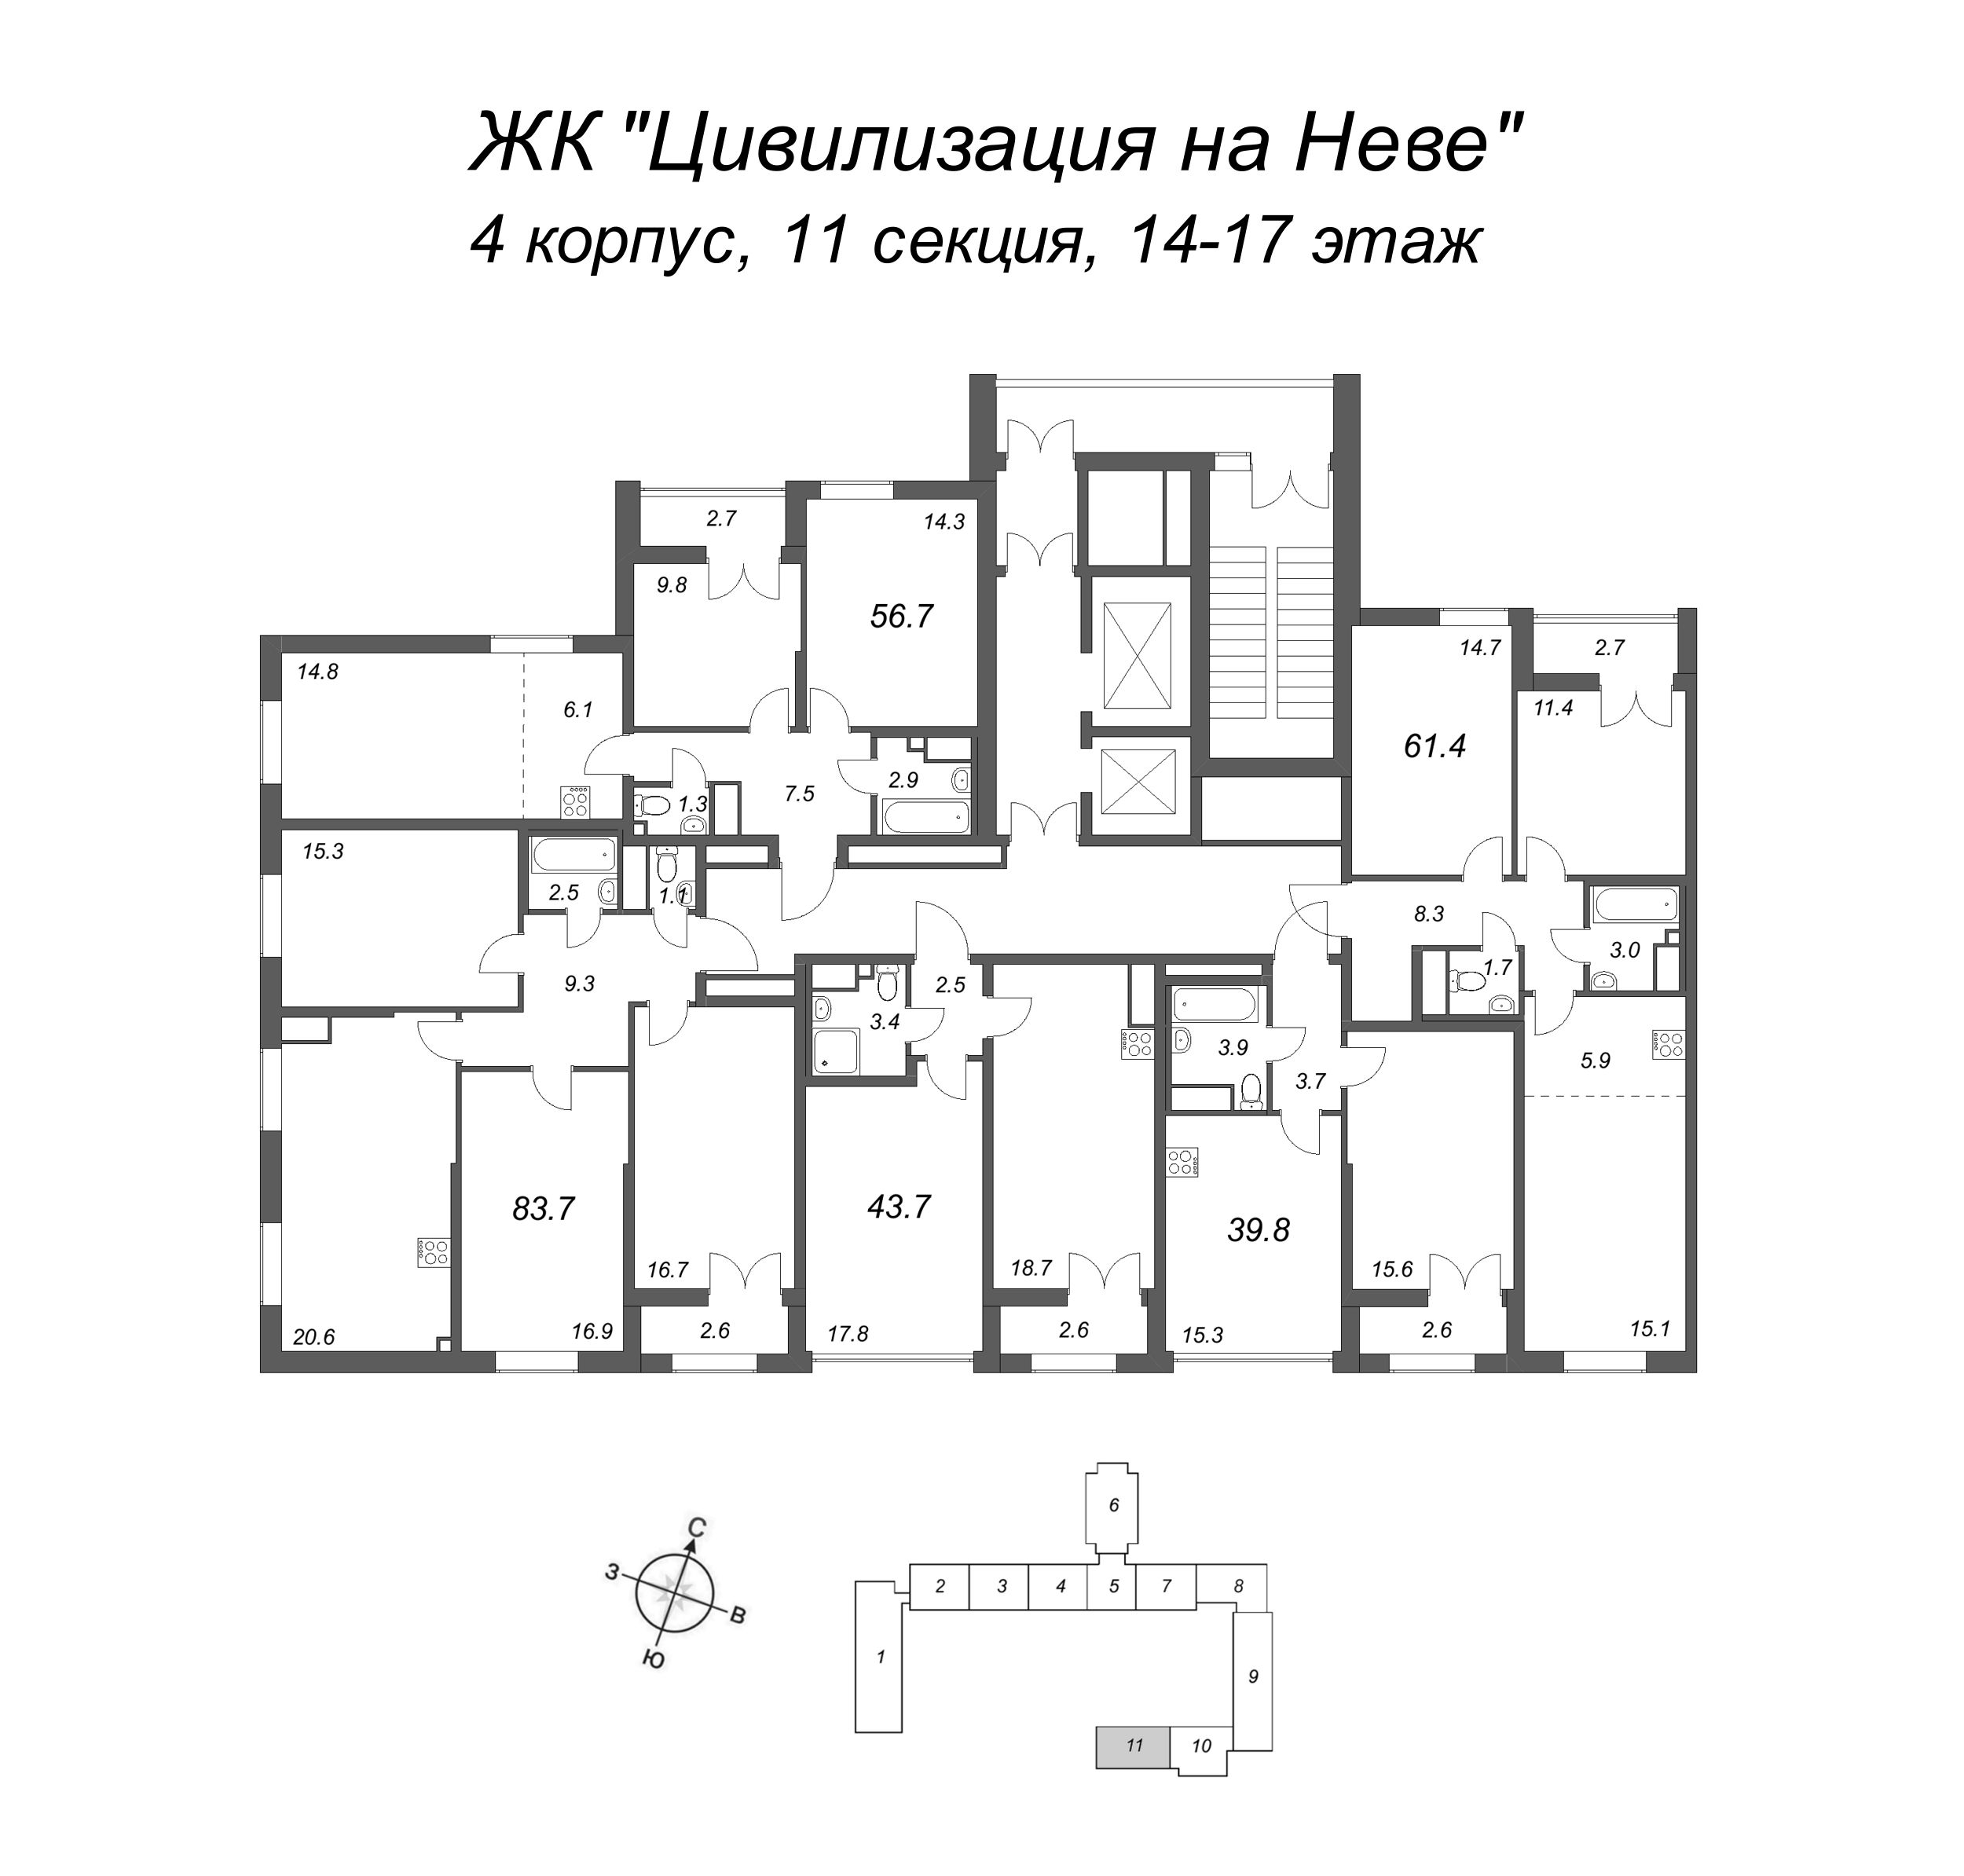 4-комнатная (Евро) квартира, 83.7 м² в ЖК "Цивилизация на Неве" - планировка этажа